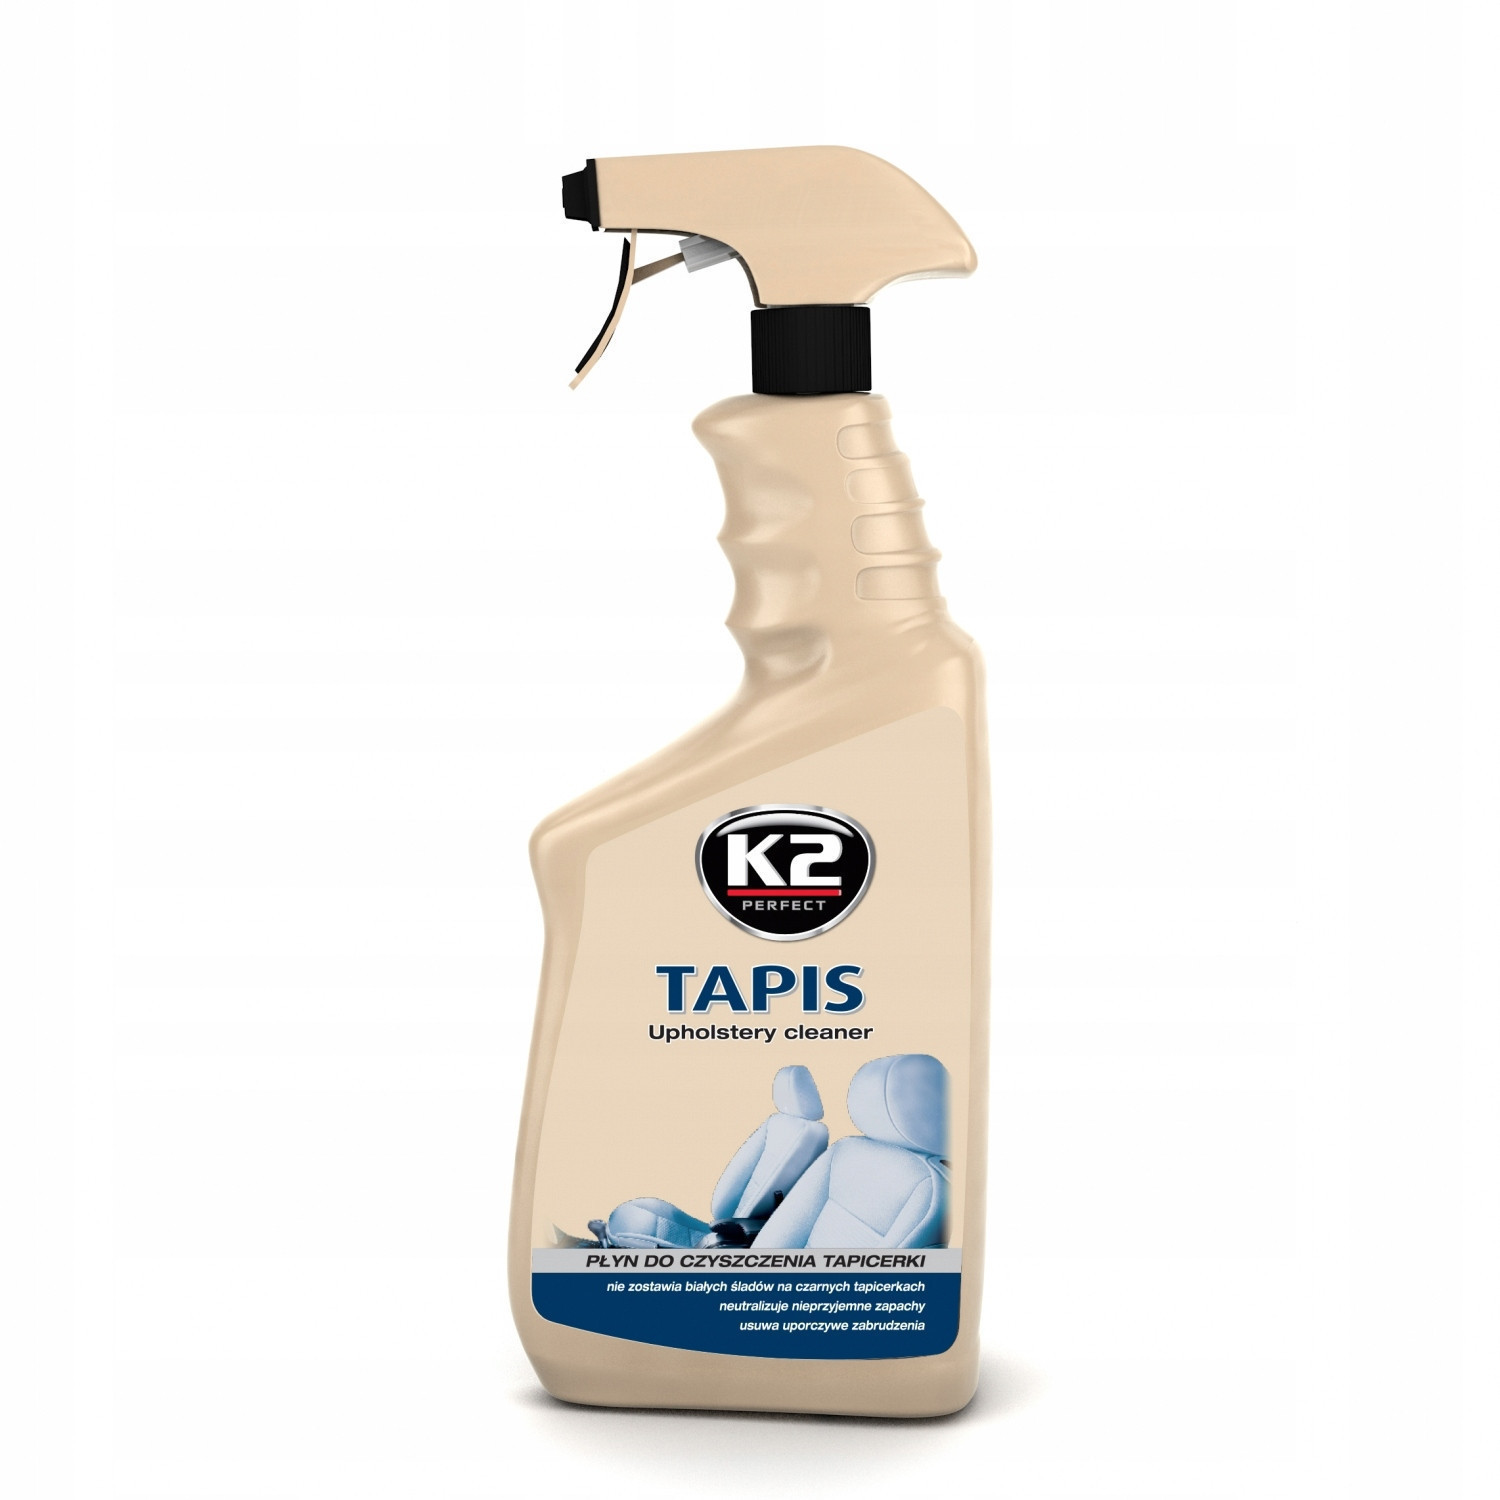 K2 tapis - środek do czyszczenia tapicerki